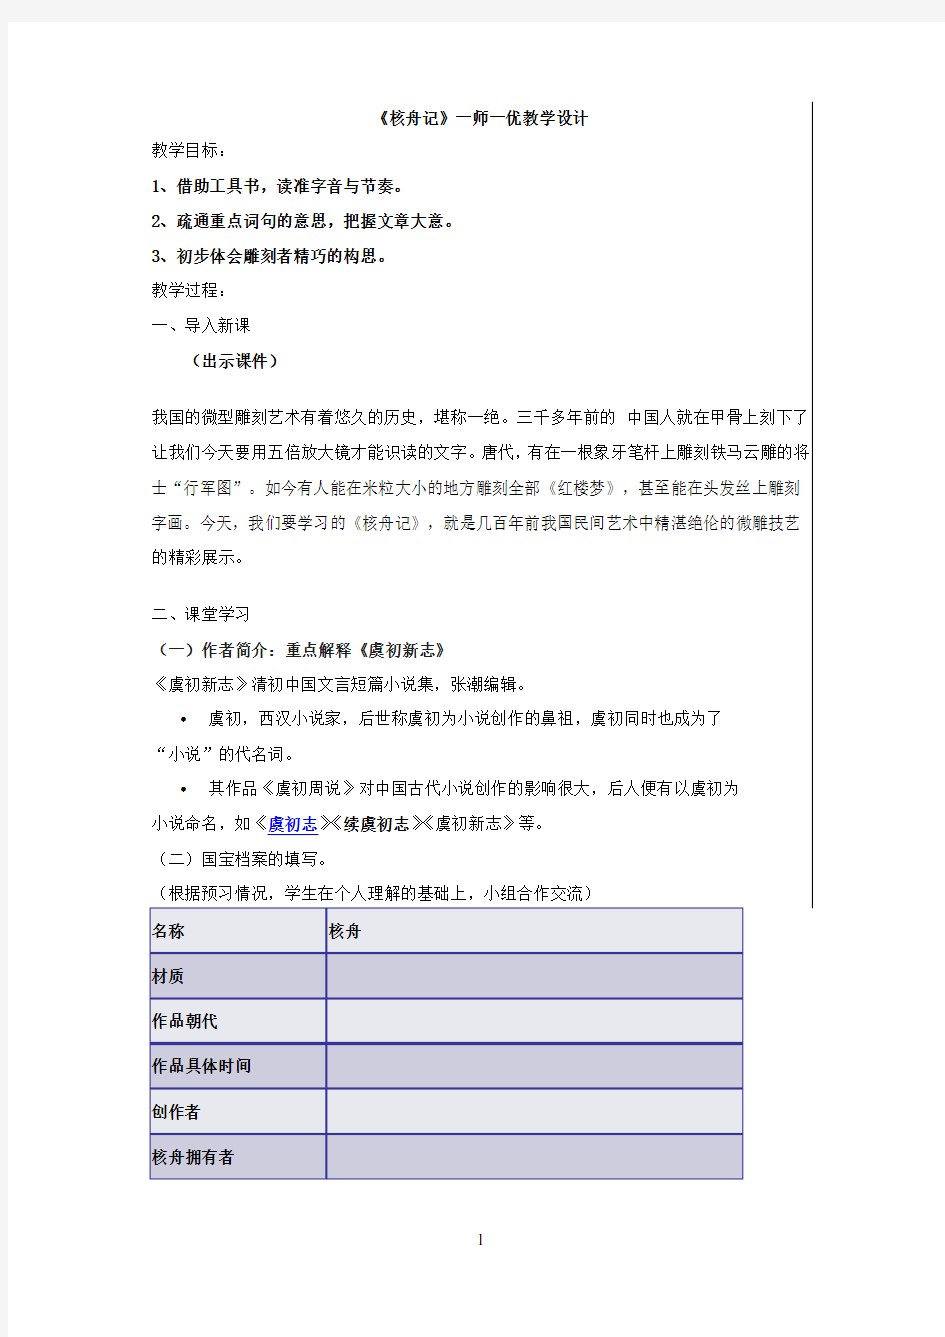 初中语文_核舟记教学设计学情分析教材分析课后反思